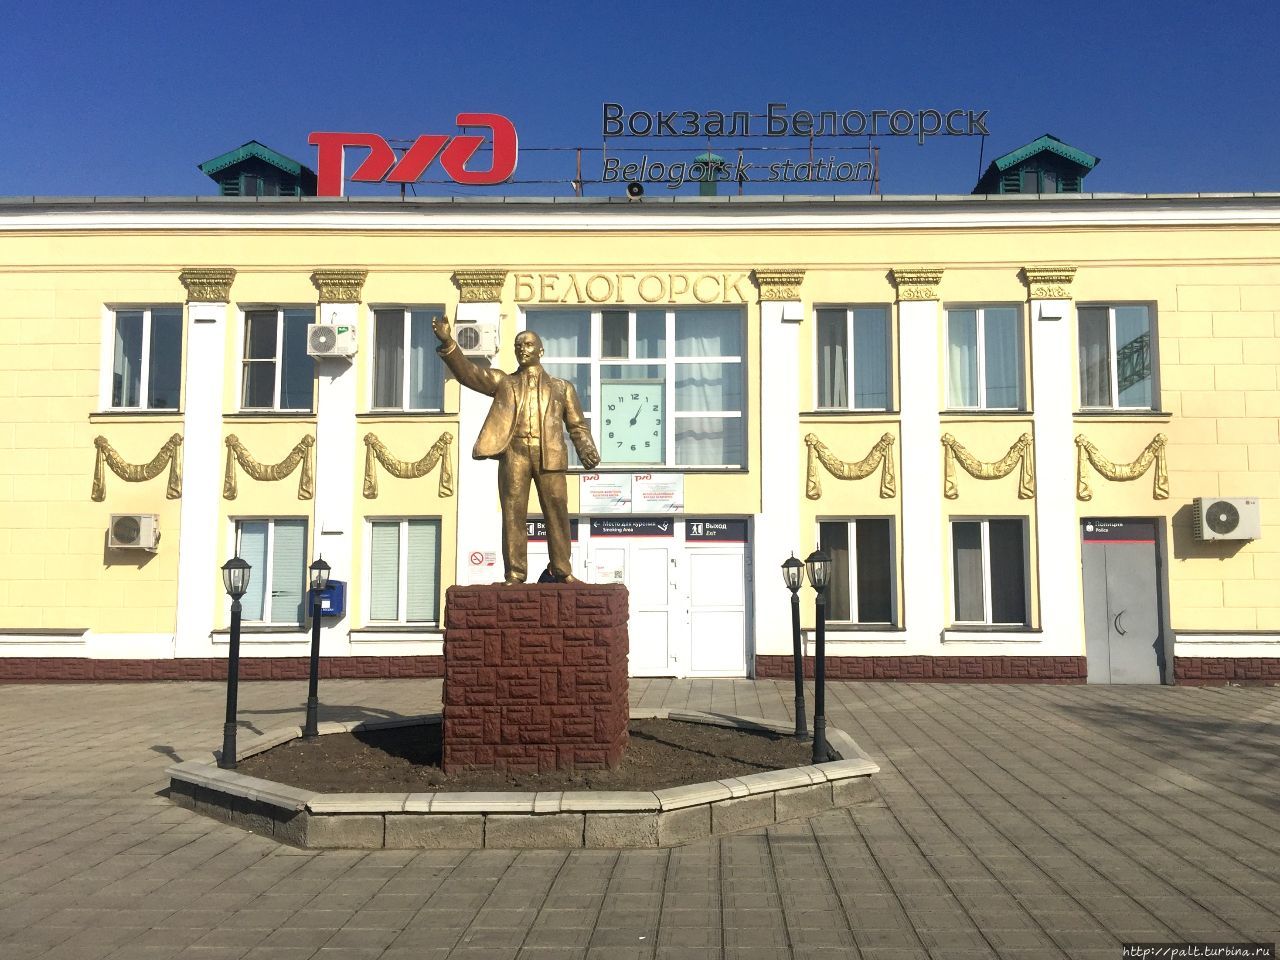 Вокзал Белогорска на многих ранних фото бирюзового цвета. А вот сейчас восстановлена историческая правда в окраске Россия